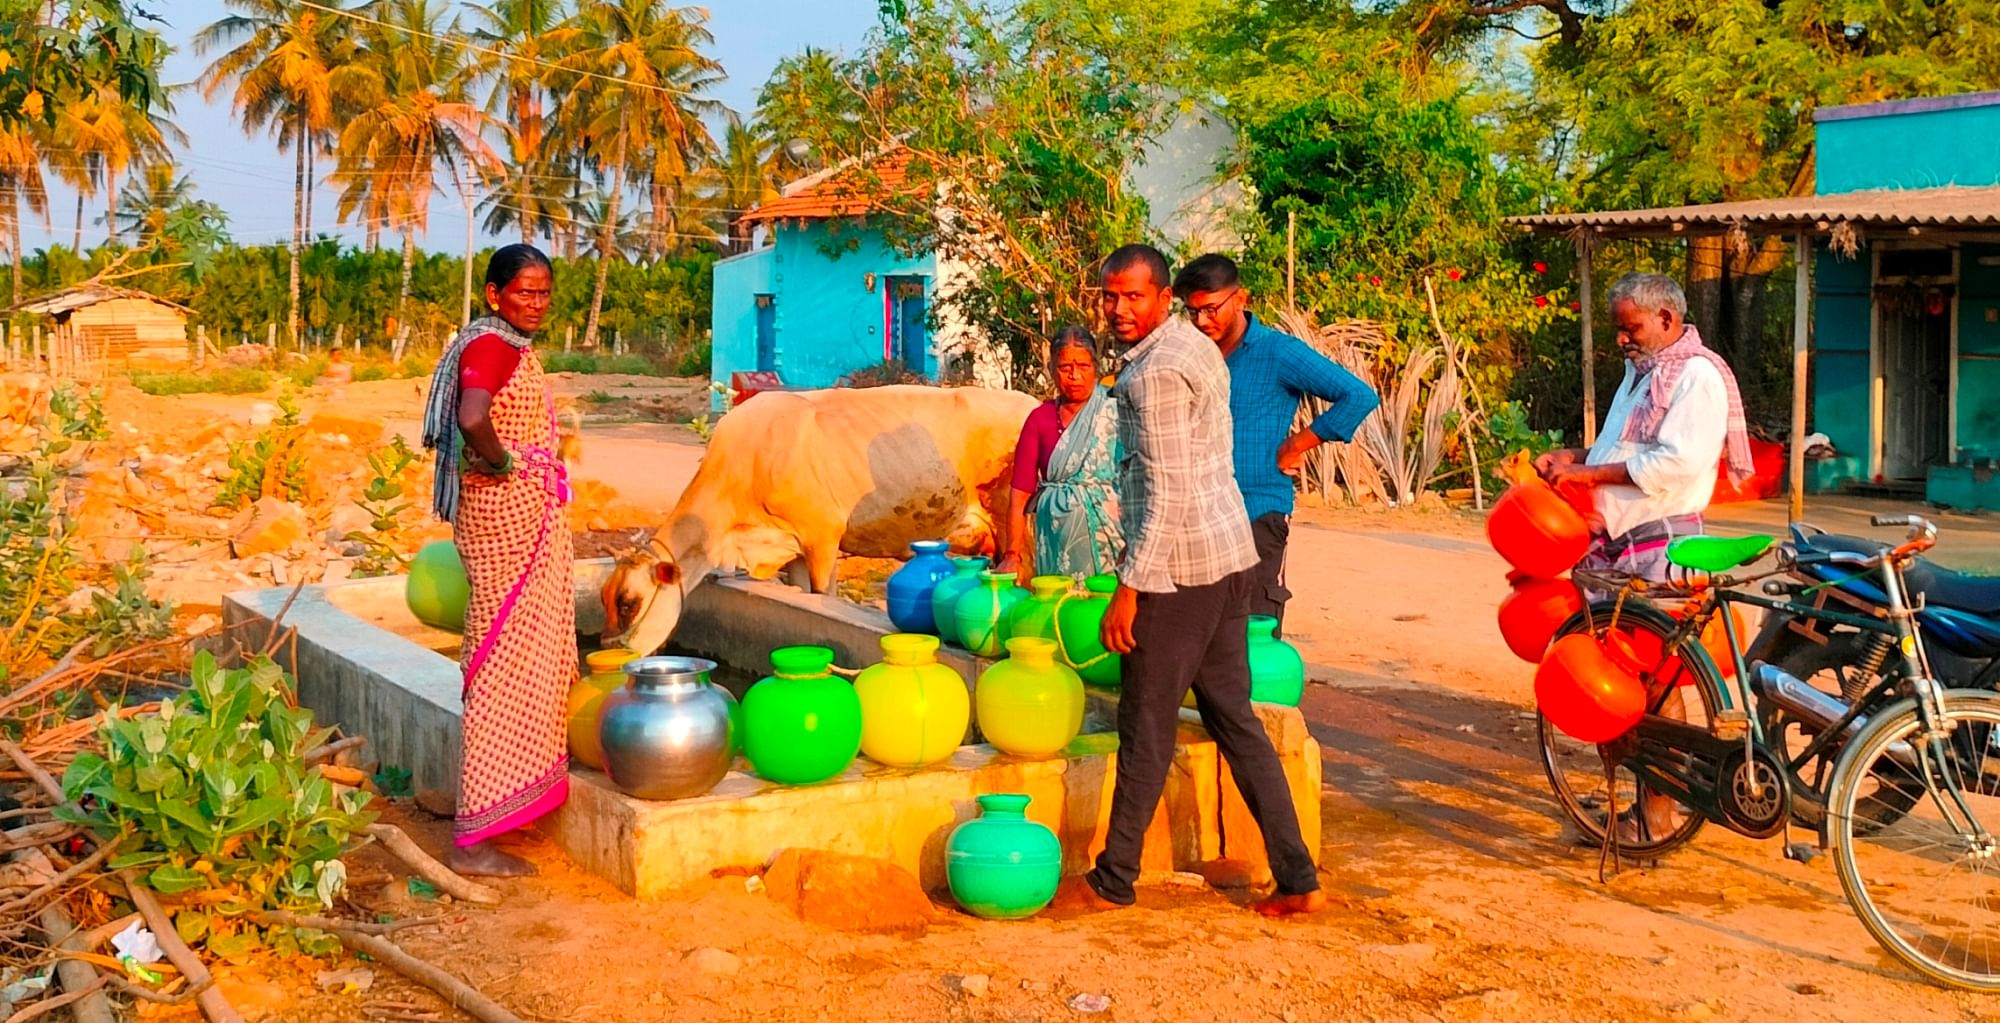 ಬೀರೂರು ಹೋಬಳಿ ಜೋಡಿತಿಮ್ಮಾಪುರ ಗ್ರಾಮದಲ್ಲಿ ಕುಡಿಯುವ ನೀರಿಗಾಗಿ ಜನರು ಕಾಯುತ್ತಿರುವುದು